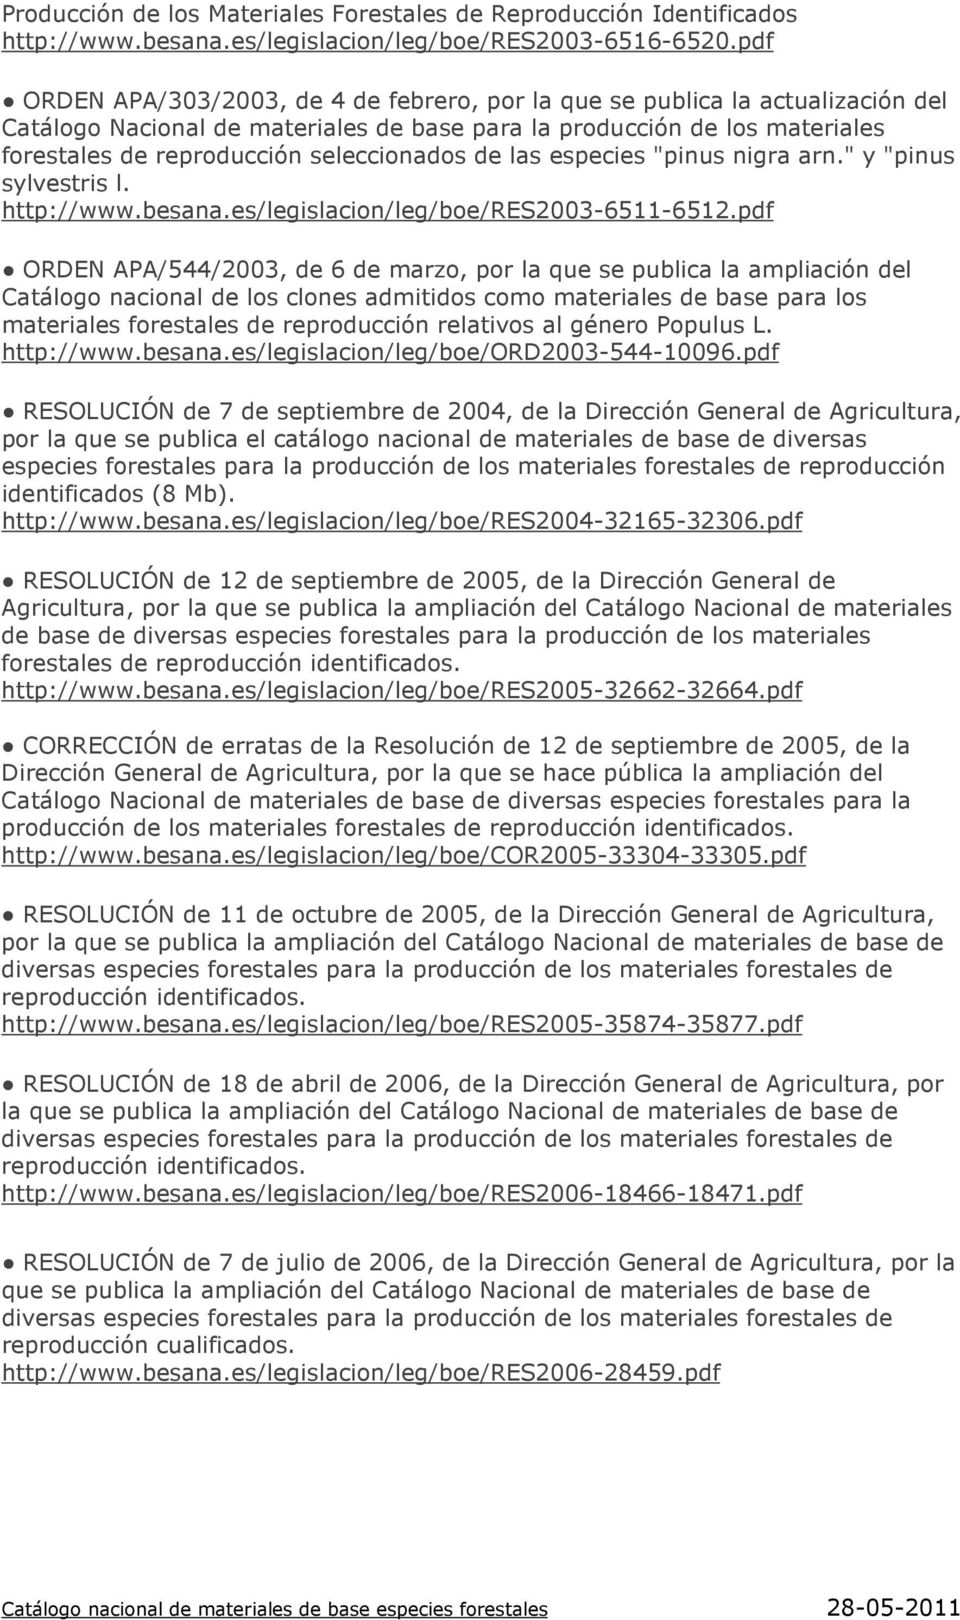 seleccionados de las especies "pinus nigra arn." y "pinus sylvestris l. http://www.besana.es/legislacion/leg/boe/res2003-6511-6512.